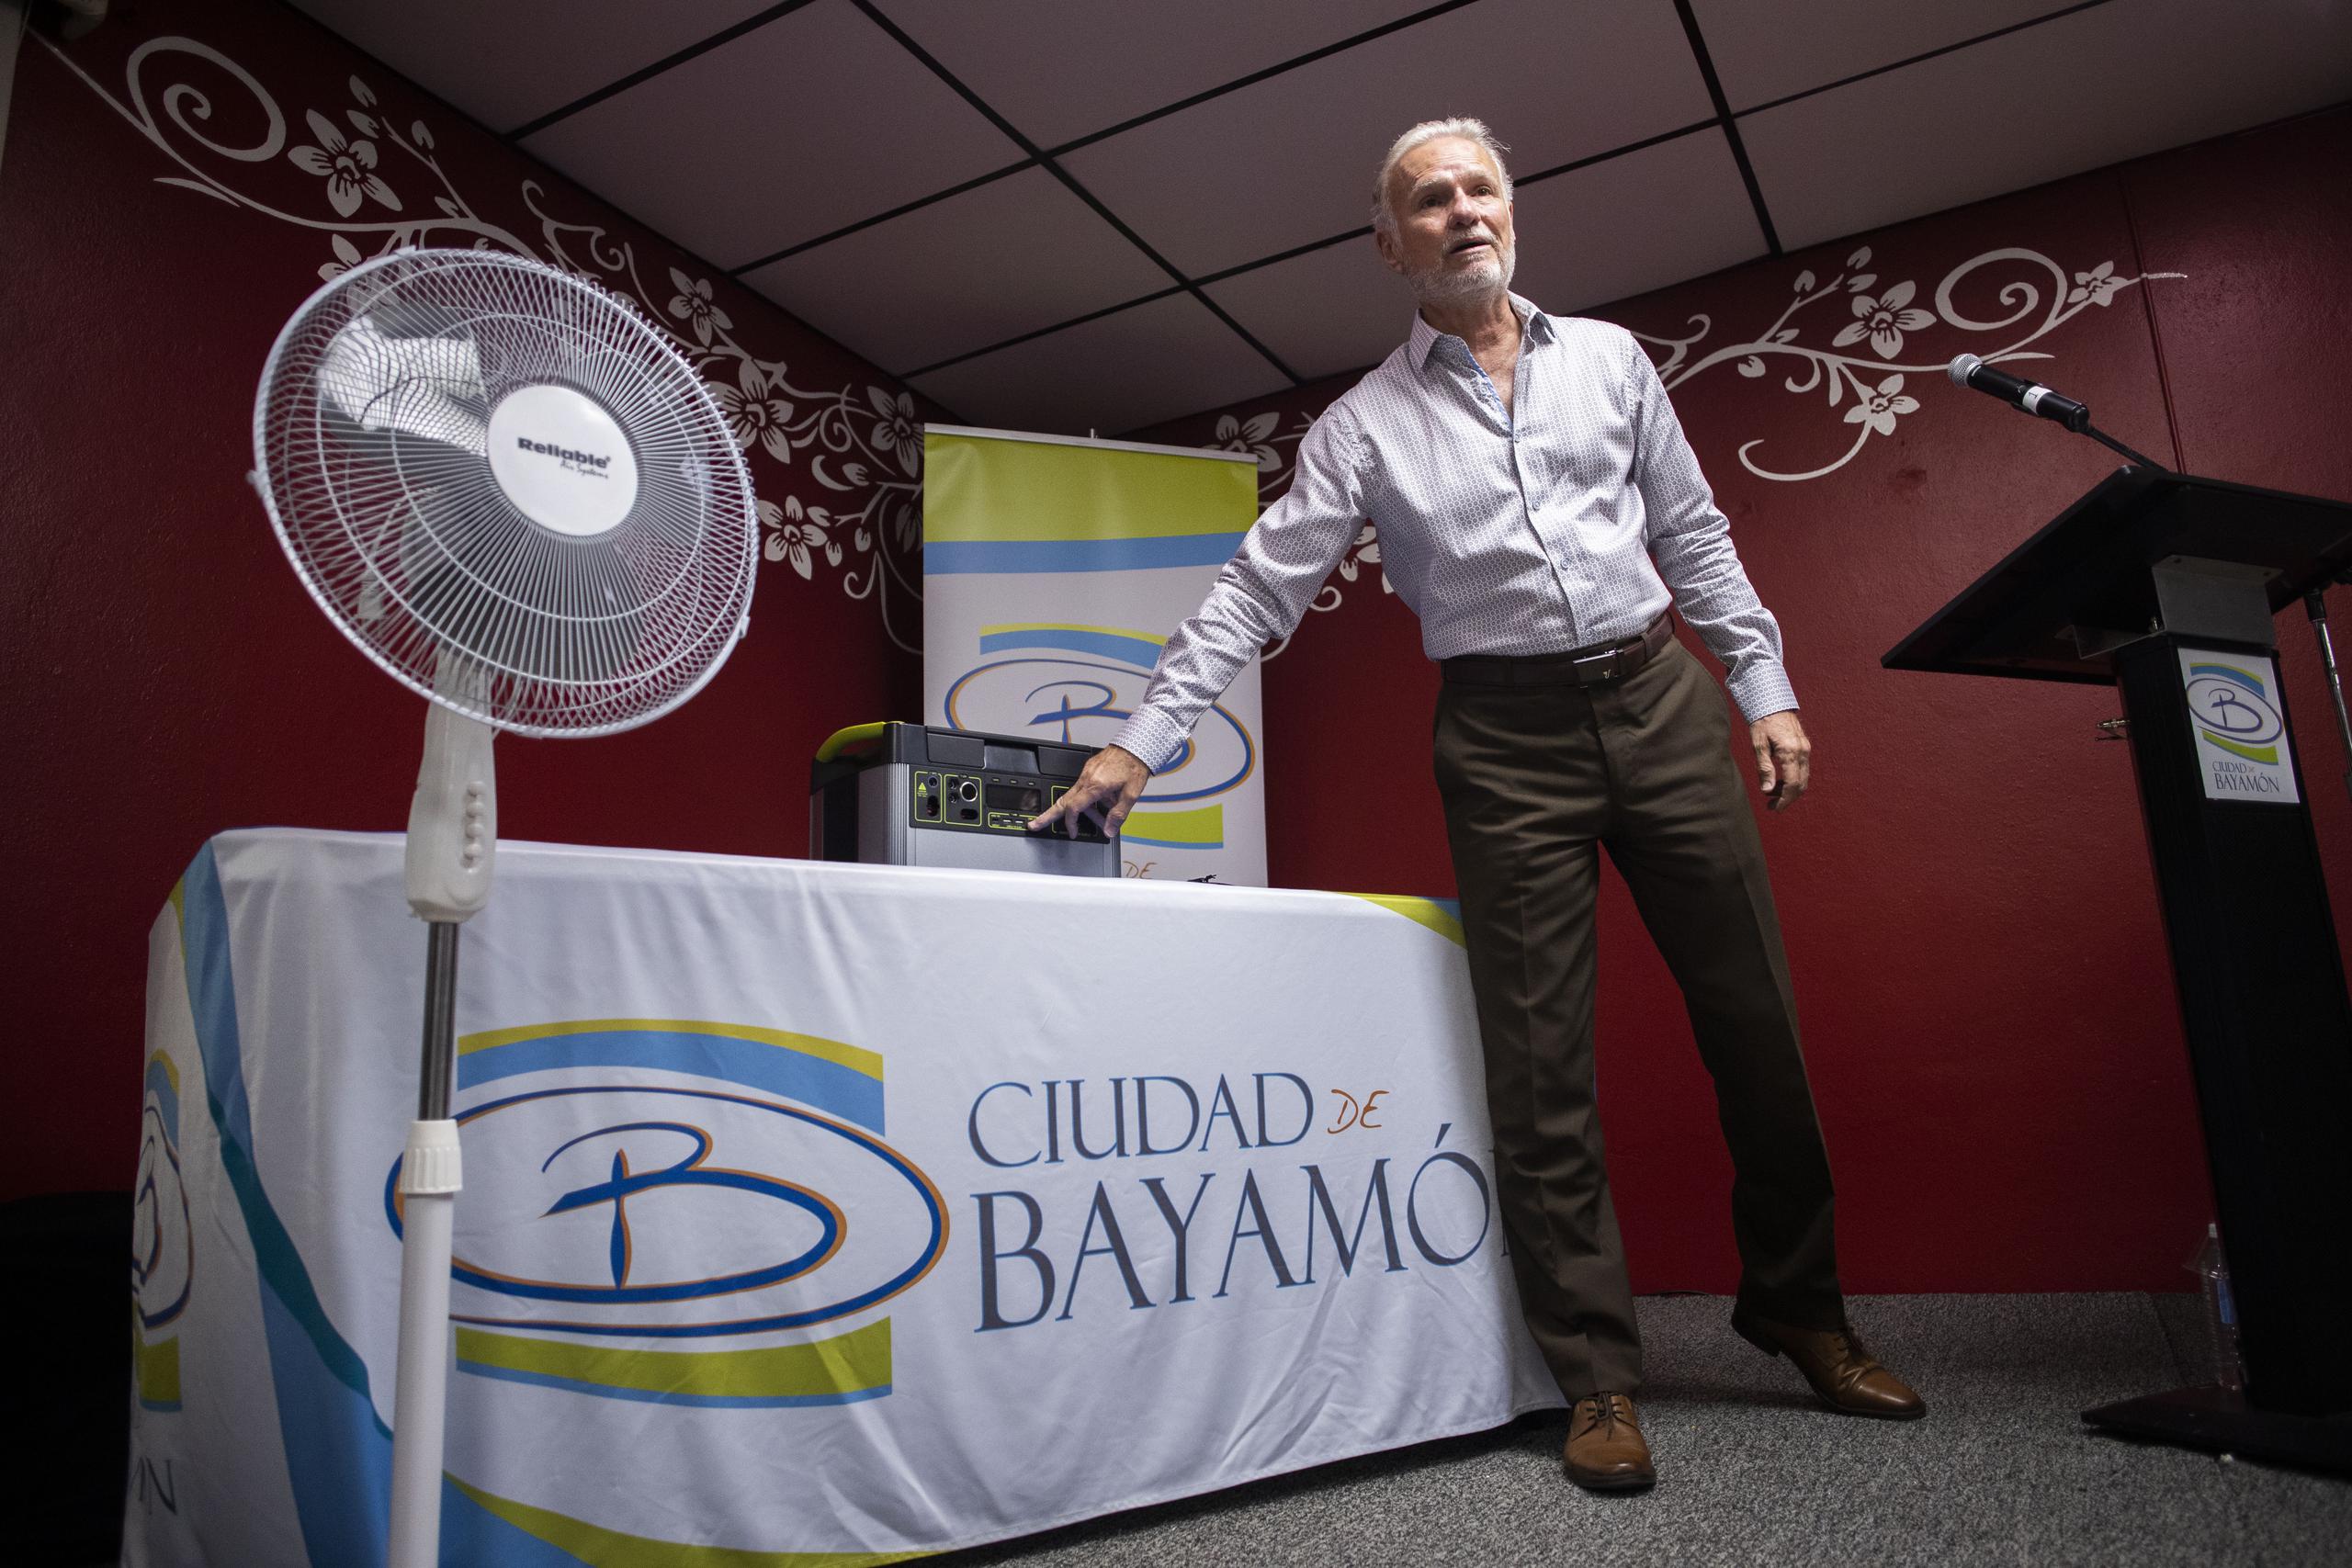 El alcalde de Bayamón, Ramón Luis Rivera Cruz, indicó que el proyecto comenzó hace unos meses y en la primera etapa repartieron baterías recargables a unas 2,269 personas encamadas y con necesidades particulares.